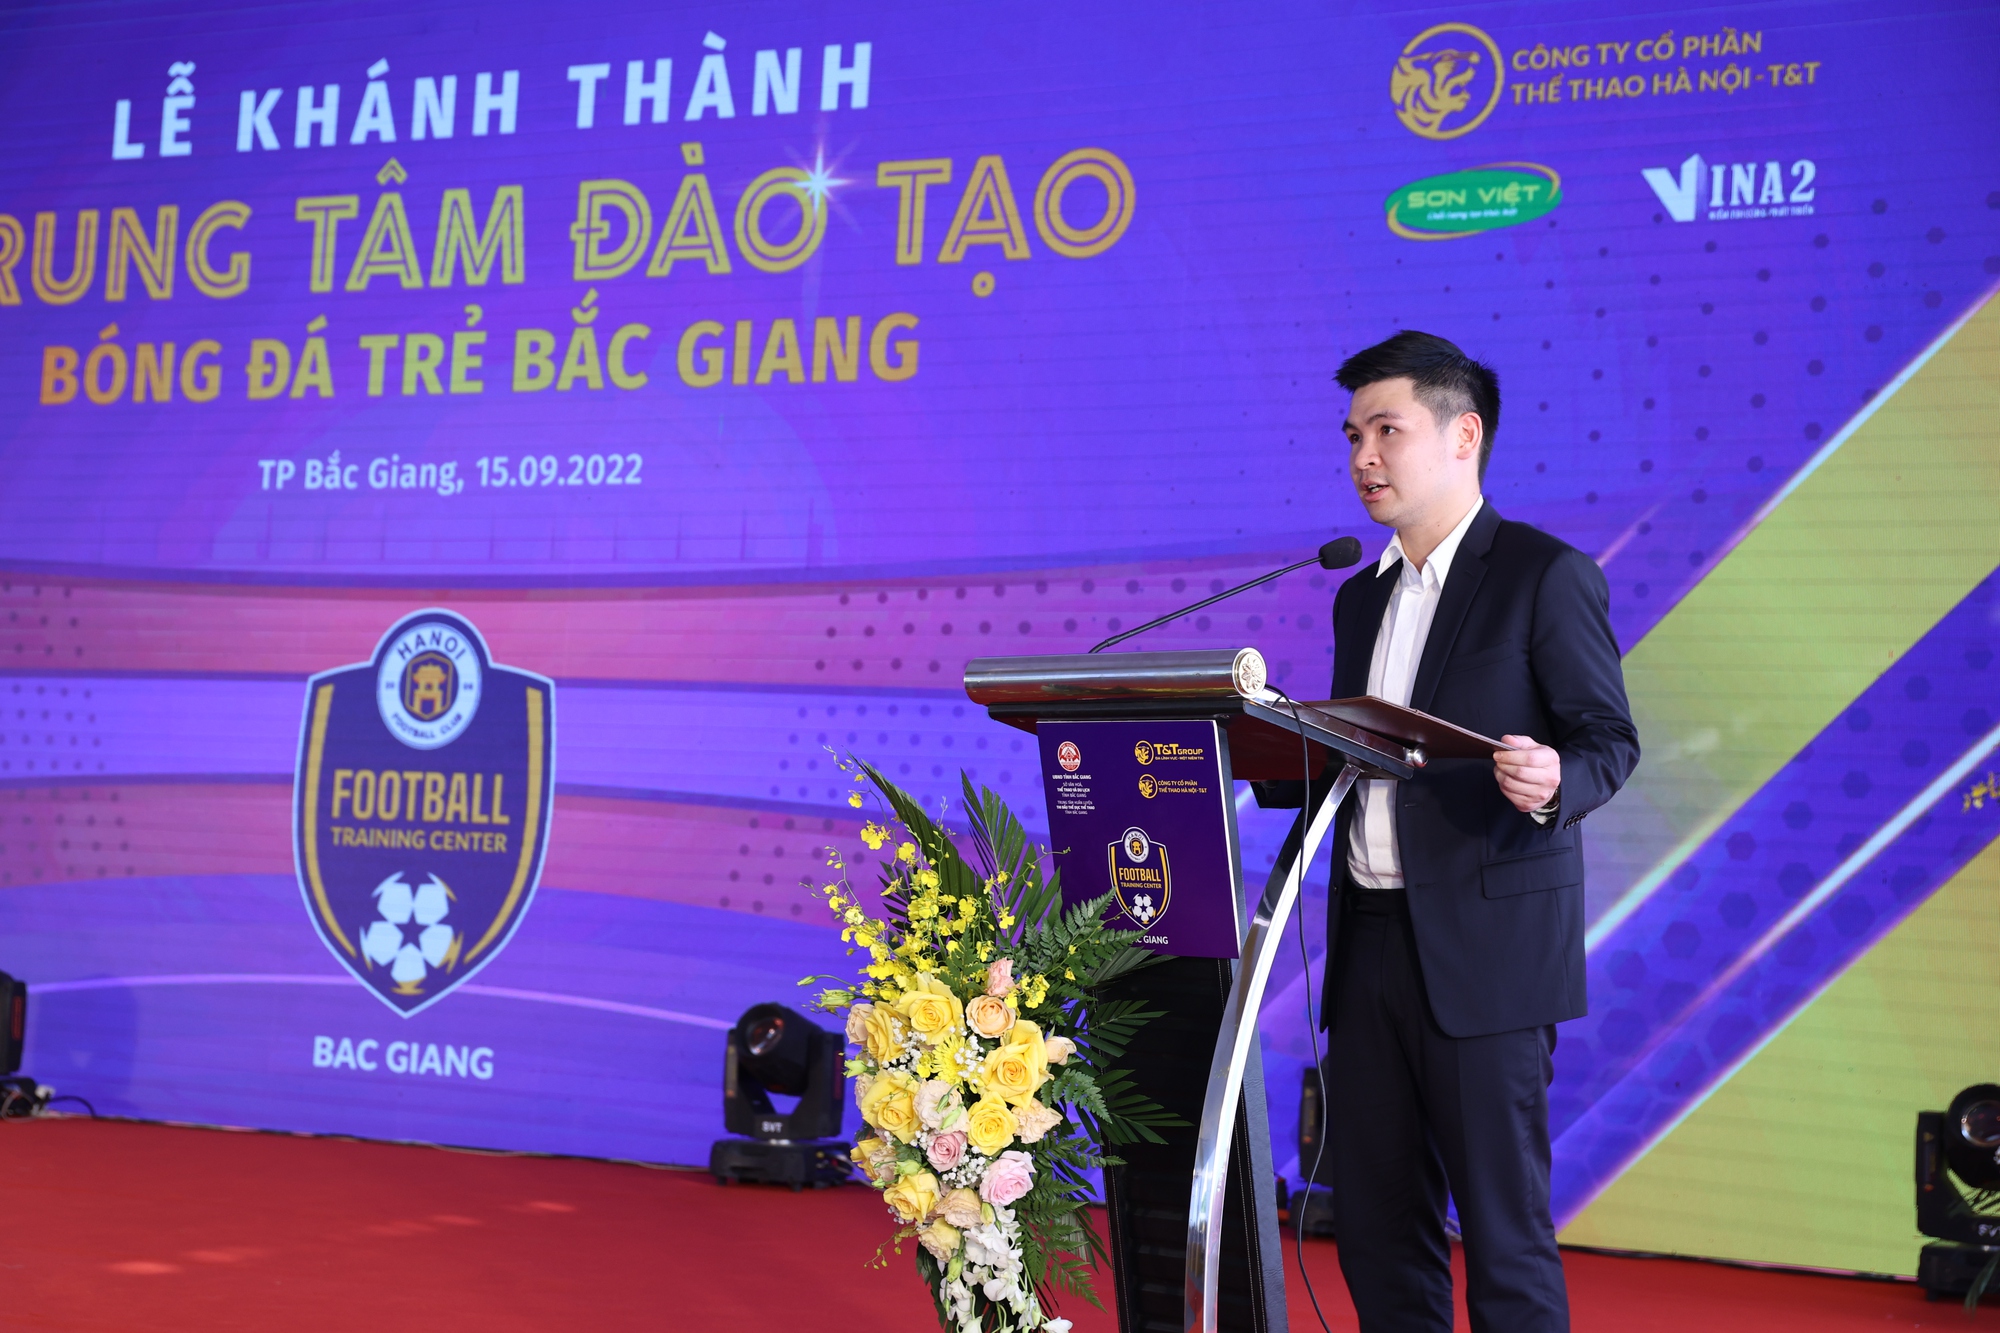 CLB Hà Nội khánh thành Trung tâm đào tạo bóng đá trẻ Bắc Giang: Đi tìm Quang Hải, Văn Hậu 2.0 - Ảnh 4.